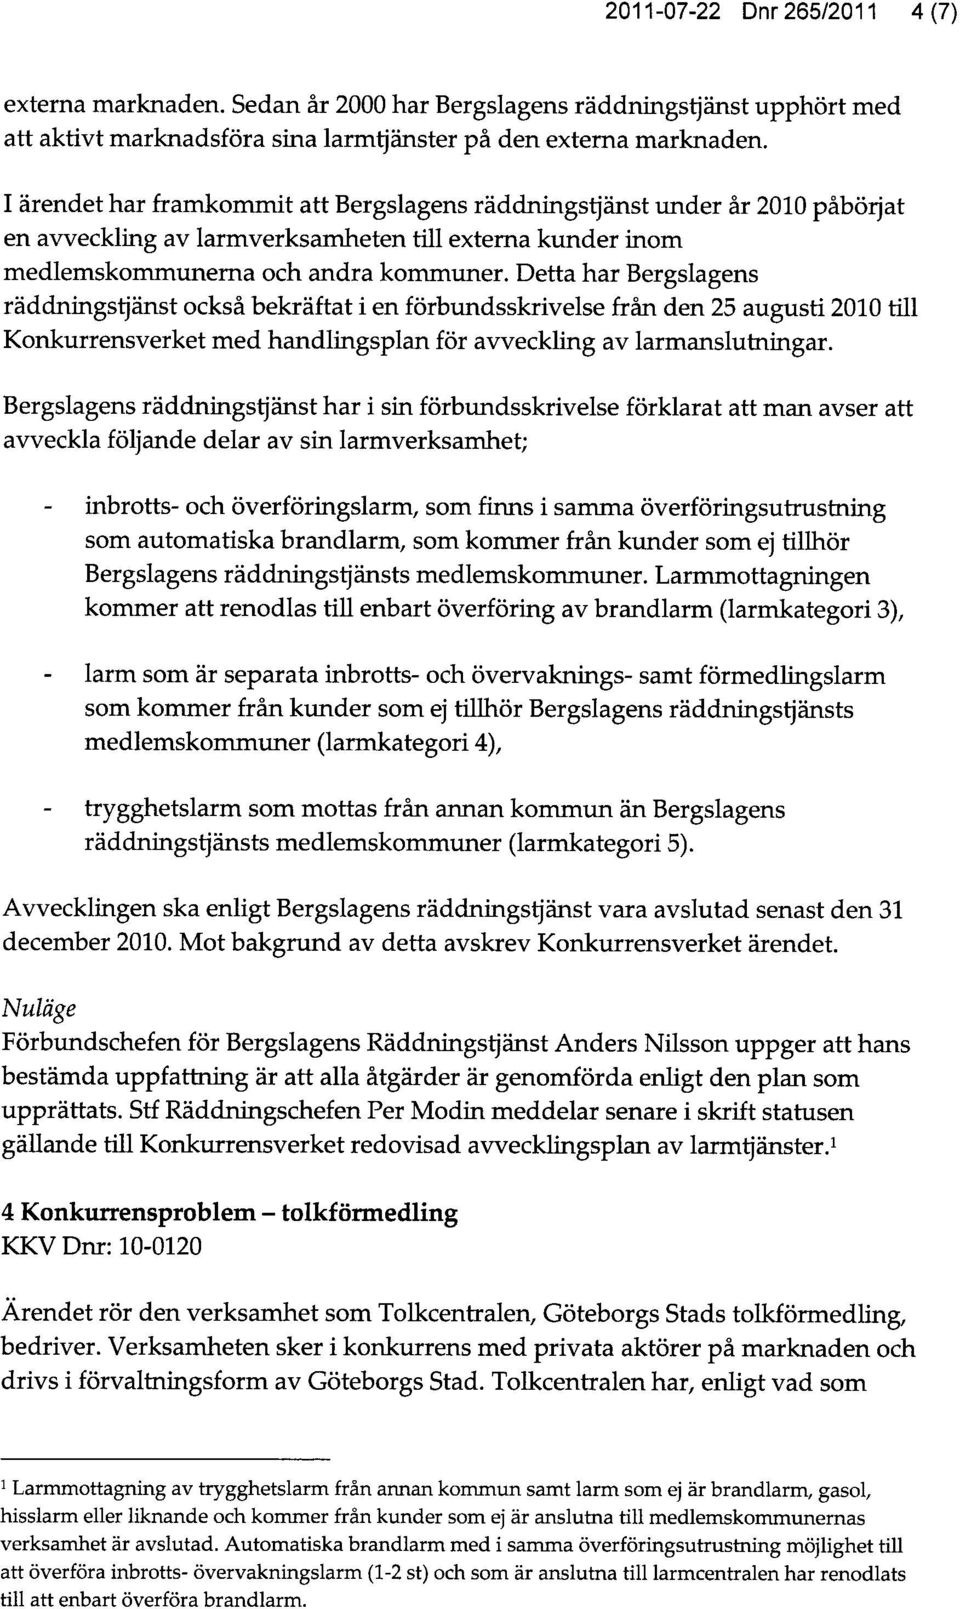 Detta har Bergslagens räddningstjänst också bekräftat i en förbundsskrivelse från den 25 augusti 2010 till Konkurrensverket med handlingsplan för avveckling av larmanslutningar.